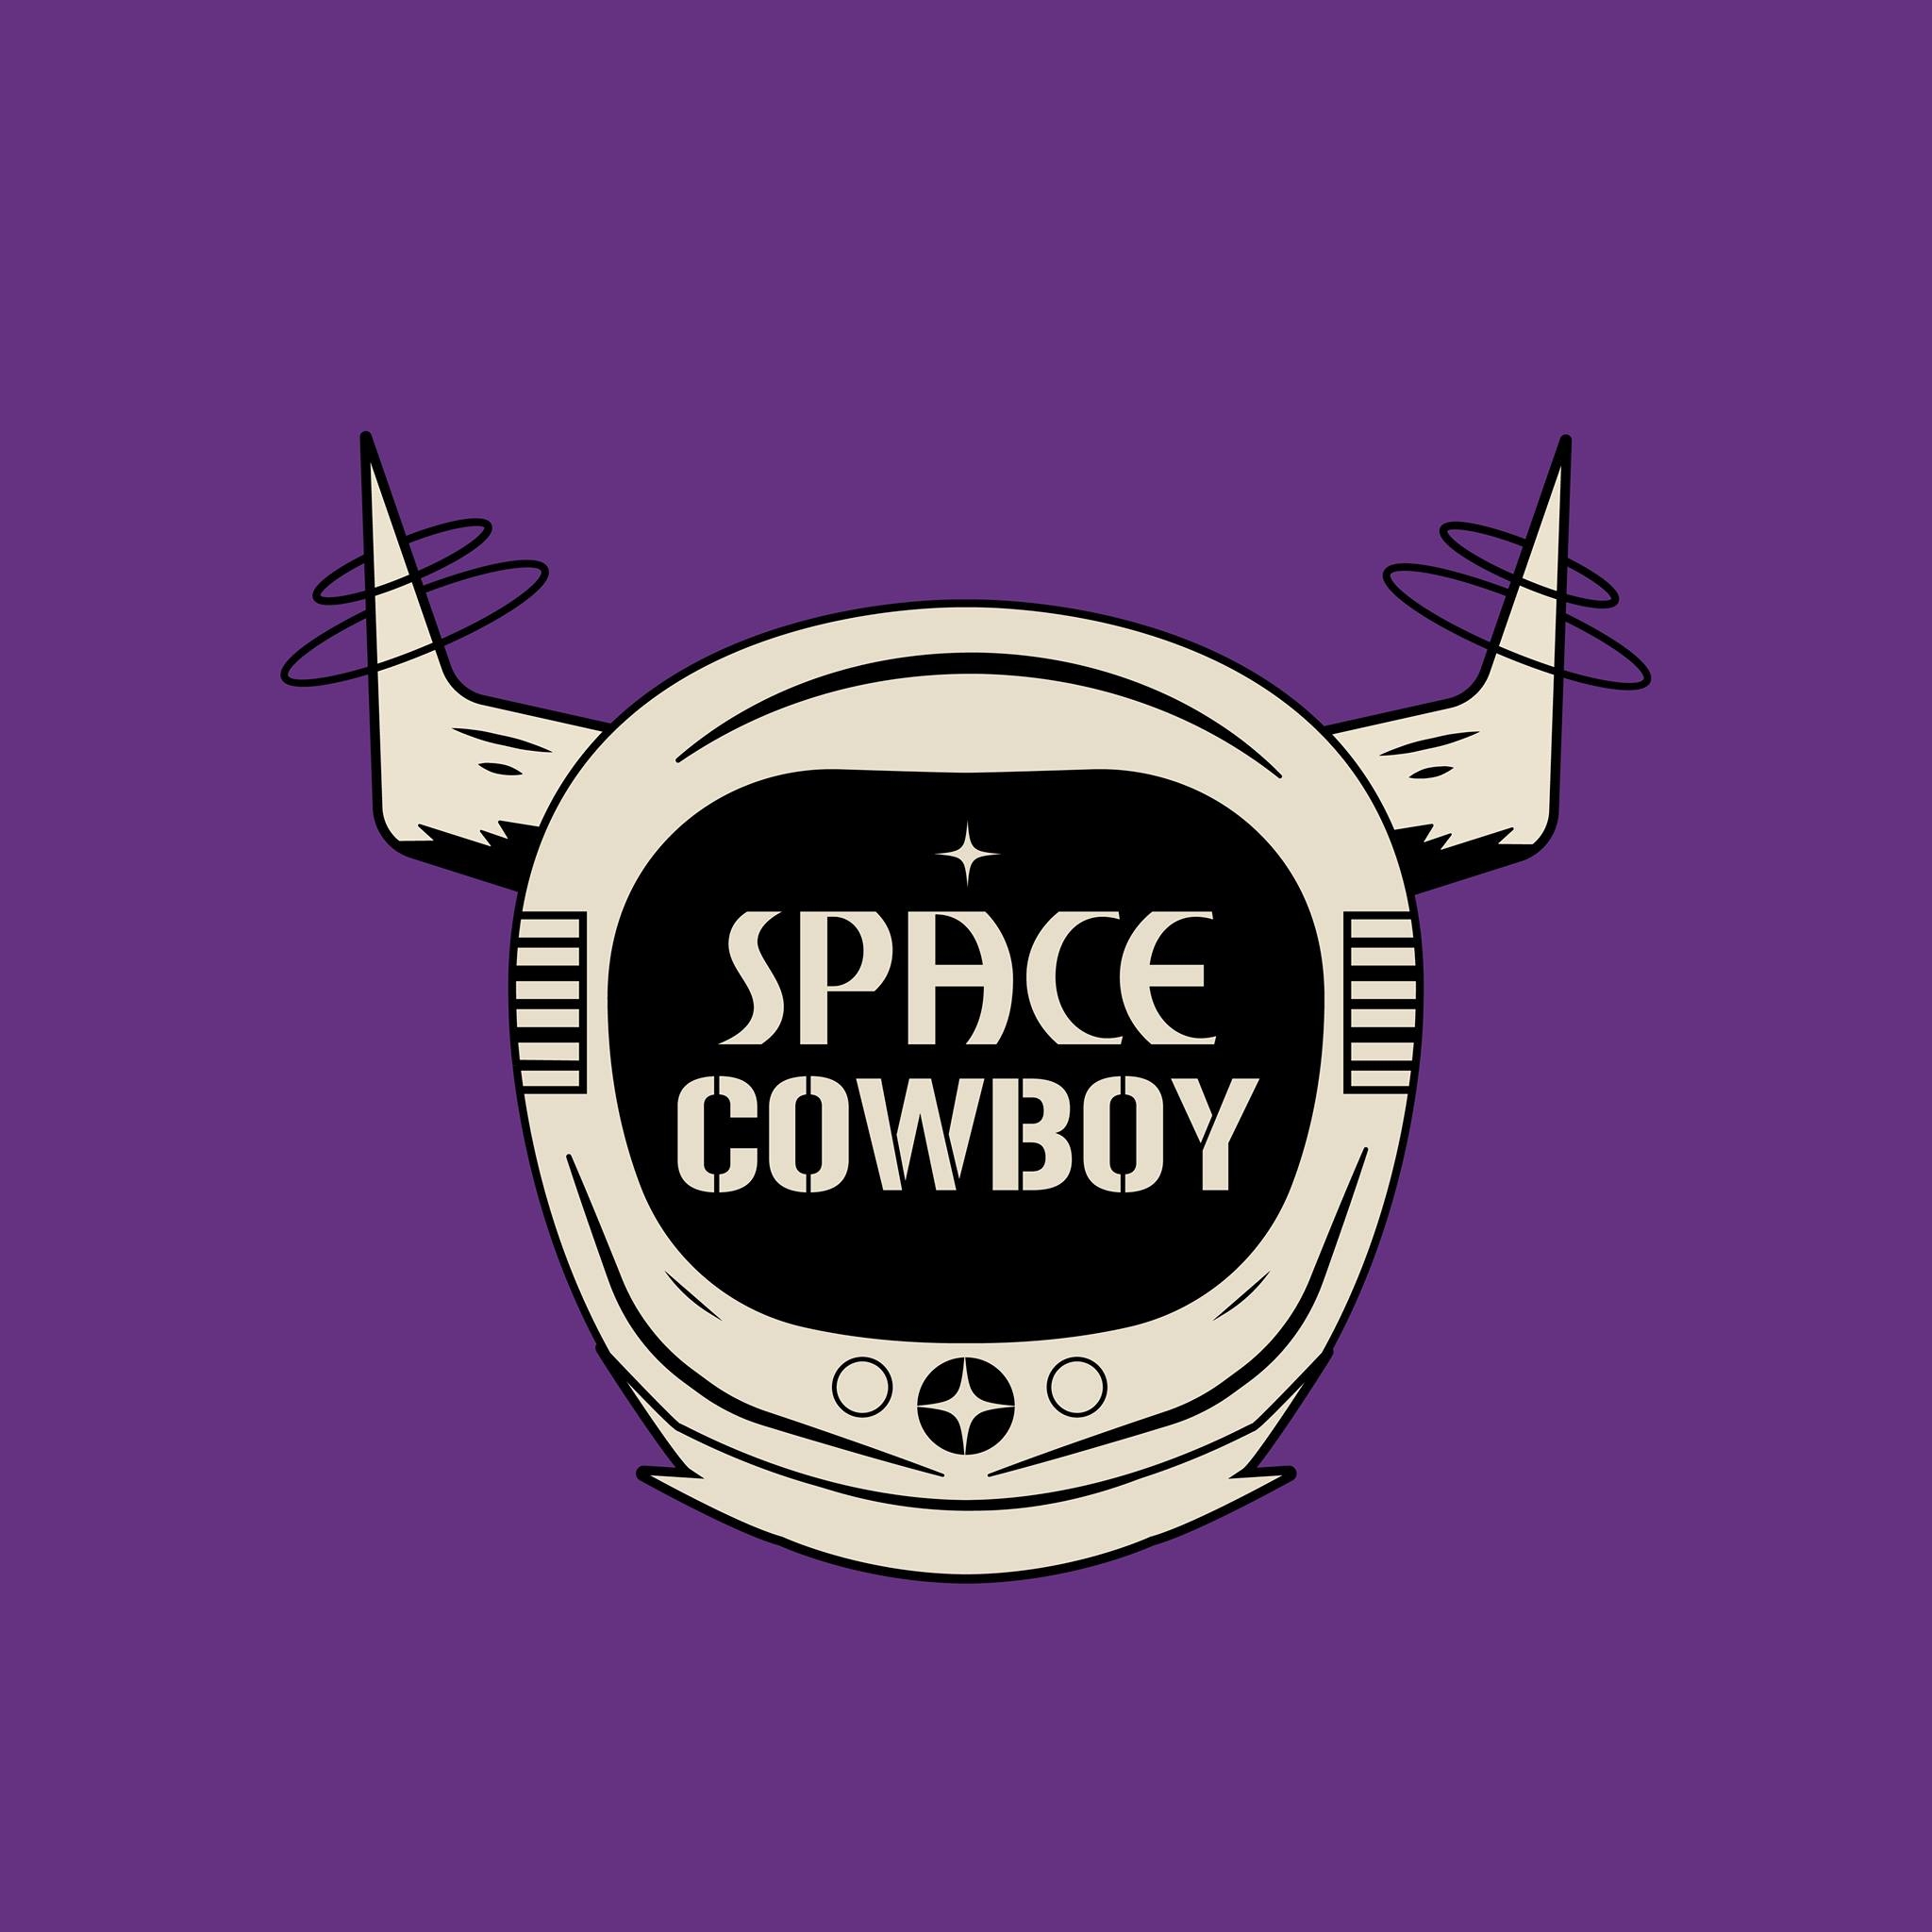 AURA - Silent Disco at Spacecowboy, en Space Cowboy, Barcelona miercoles 30 y miercoles 7 diciembre 2022. Concierto house. Nitbcn.com